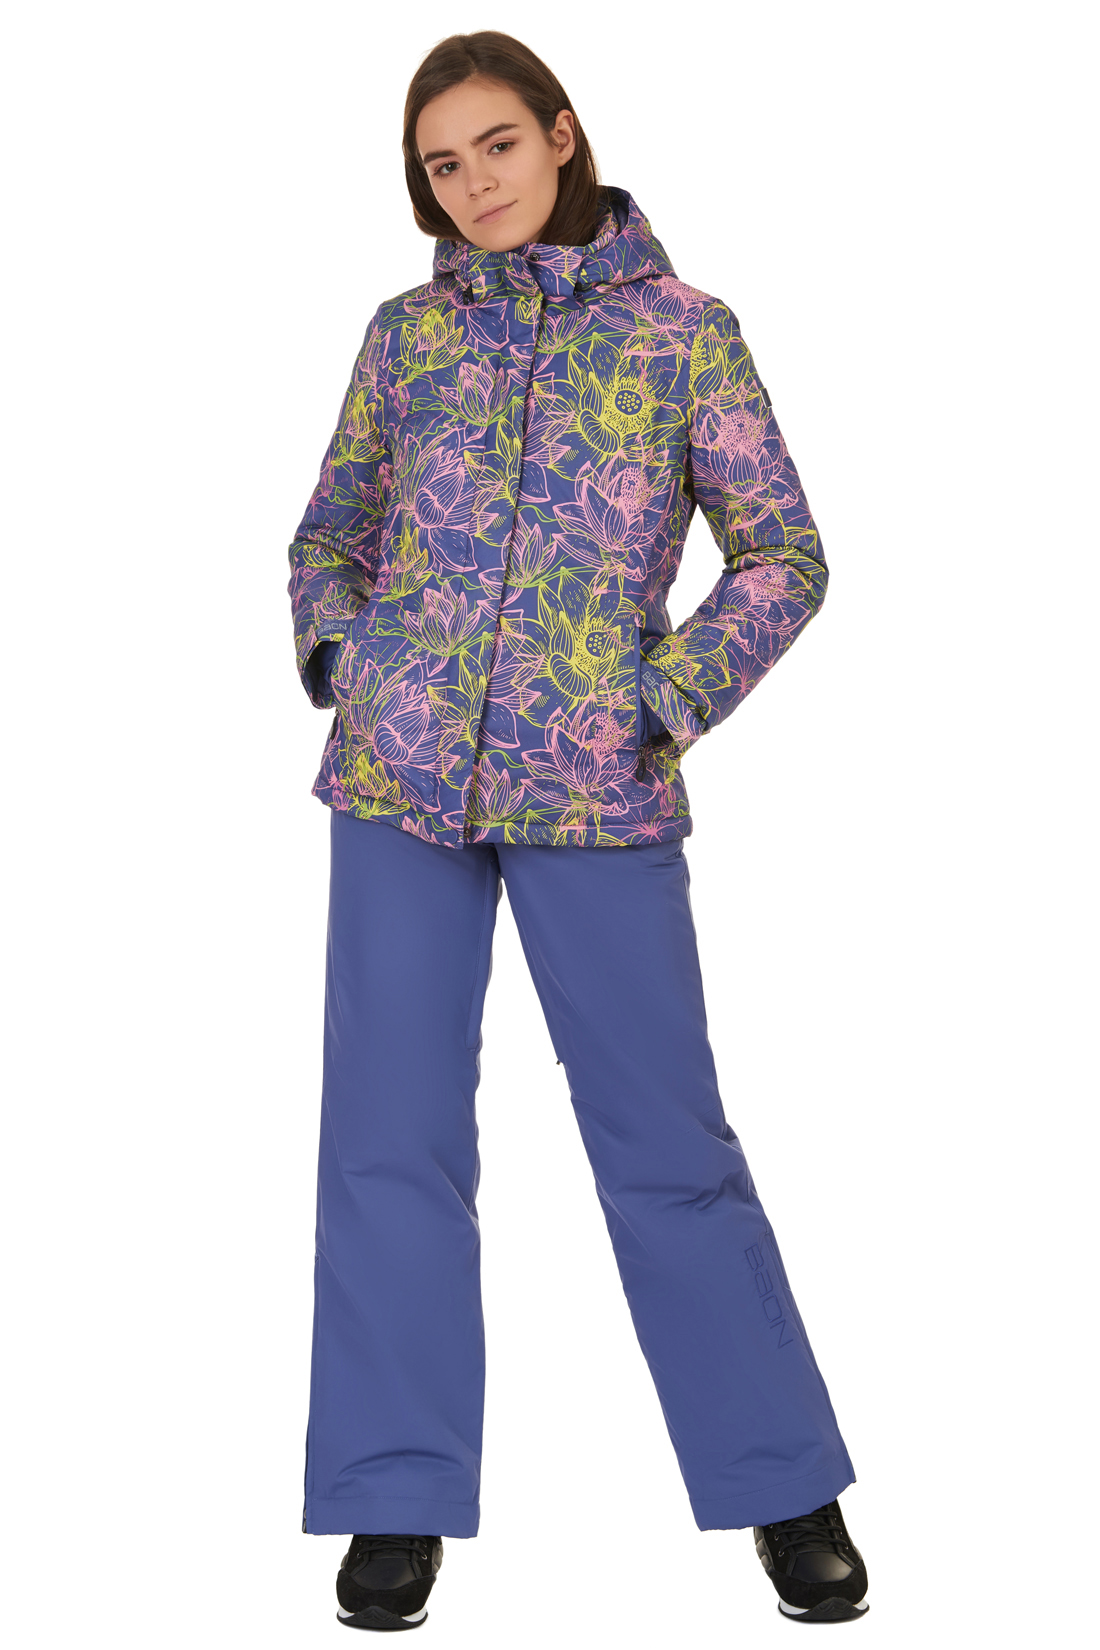 Горнолыжные брюки с клапанами на поясе (арт. baon B297905), размер XL, цвет фиолетовый Горнолыжные брюки с клапанами на поясе (арт. baon B297905) - фото 4